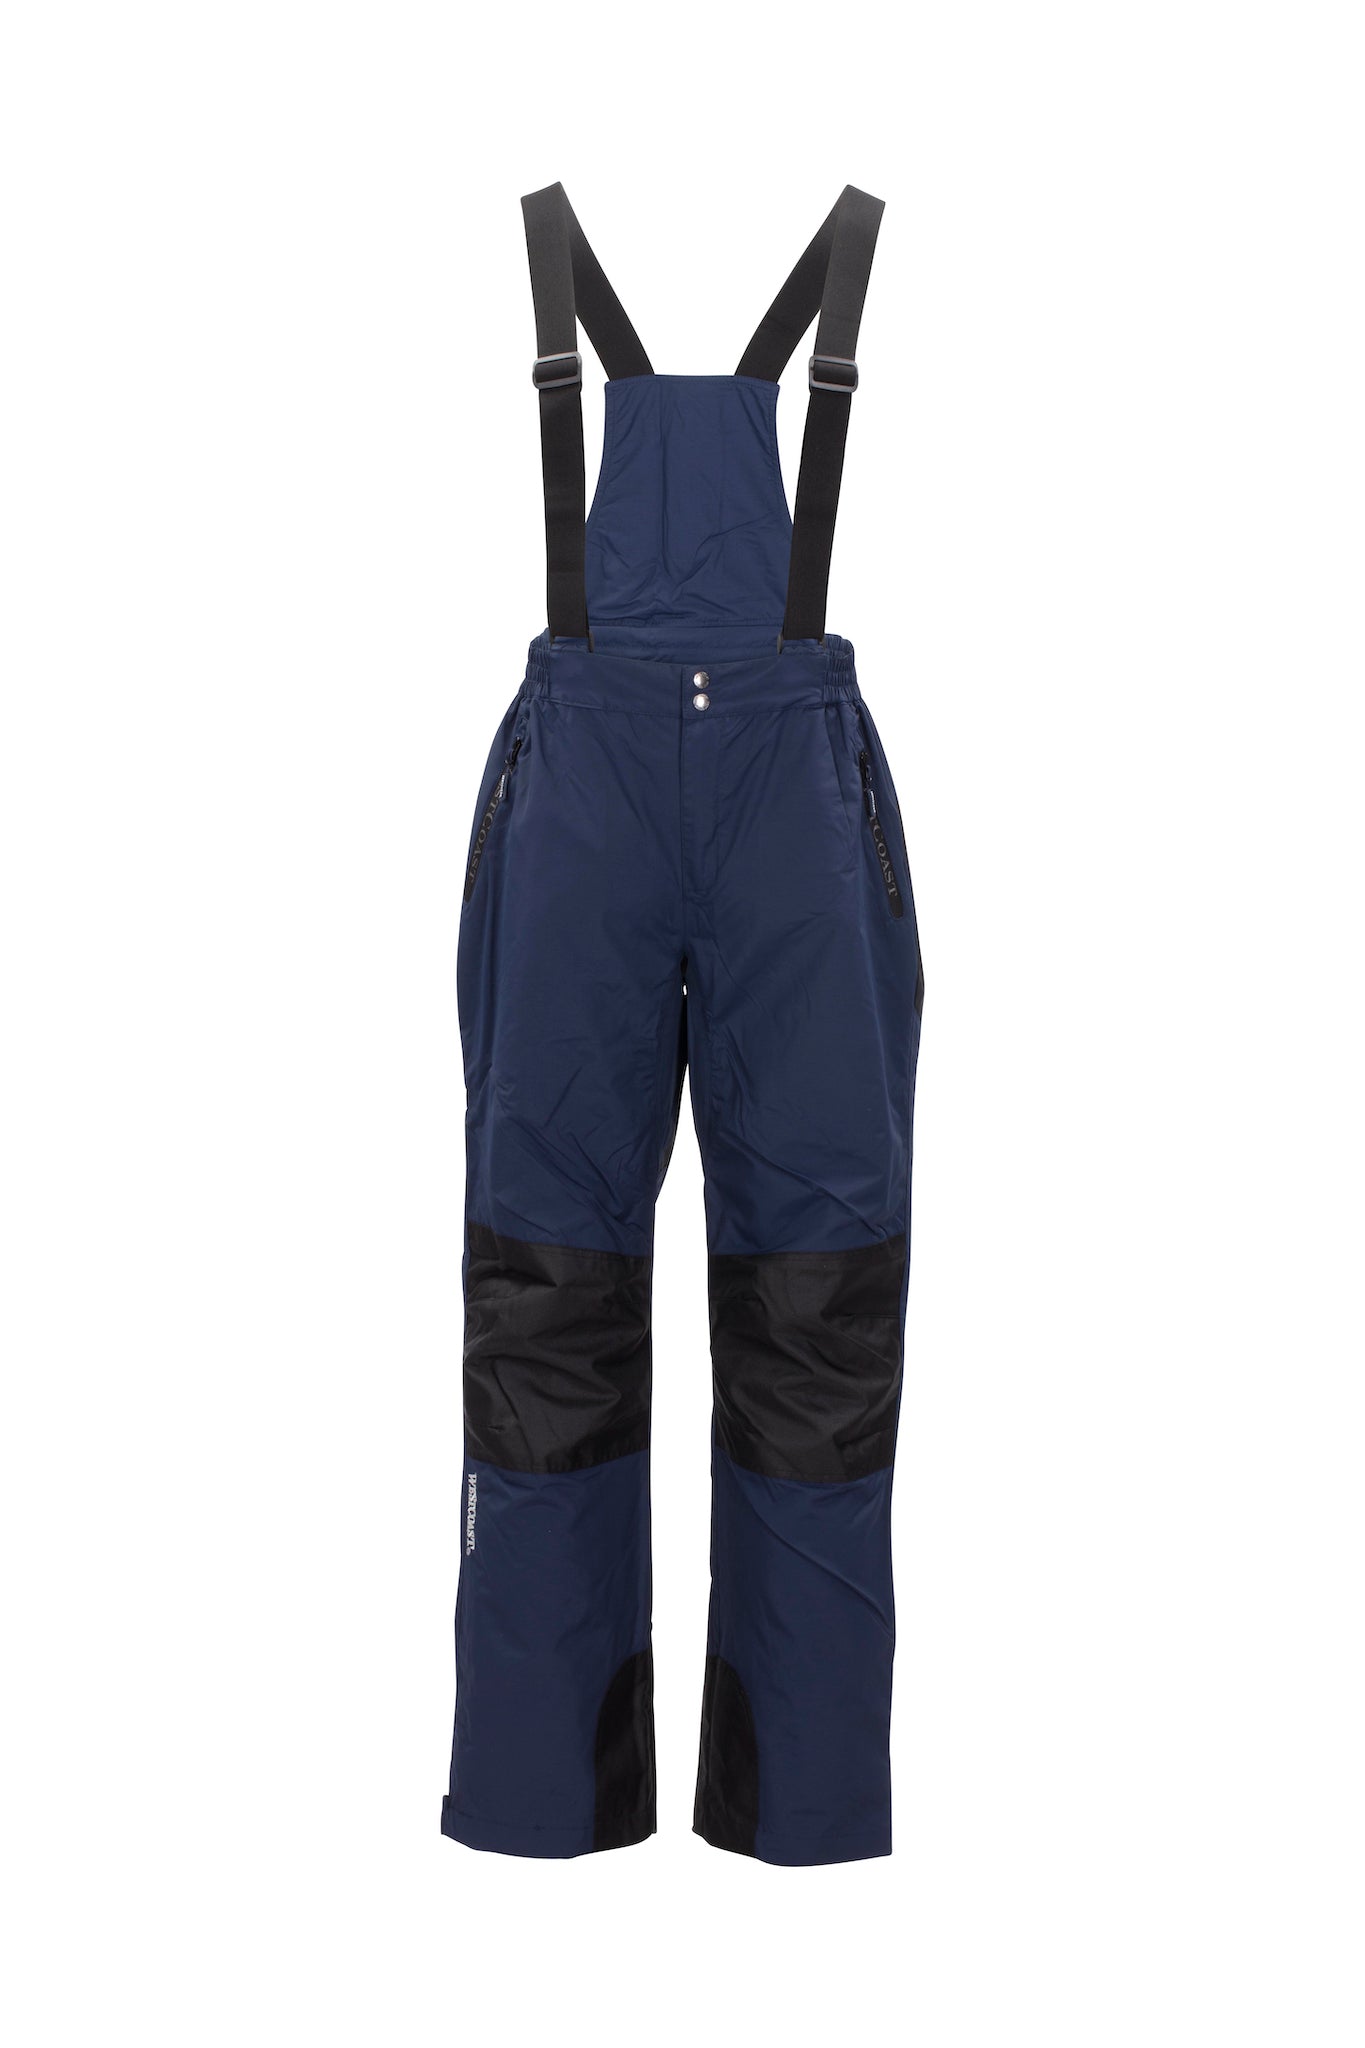 WESTCOAST Women's/Men's (Unisex) Foul Weather Gear CREW Pants - WESTCOAST Swedish Sailingwear